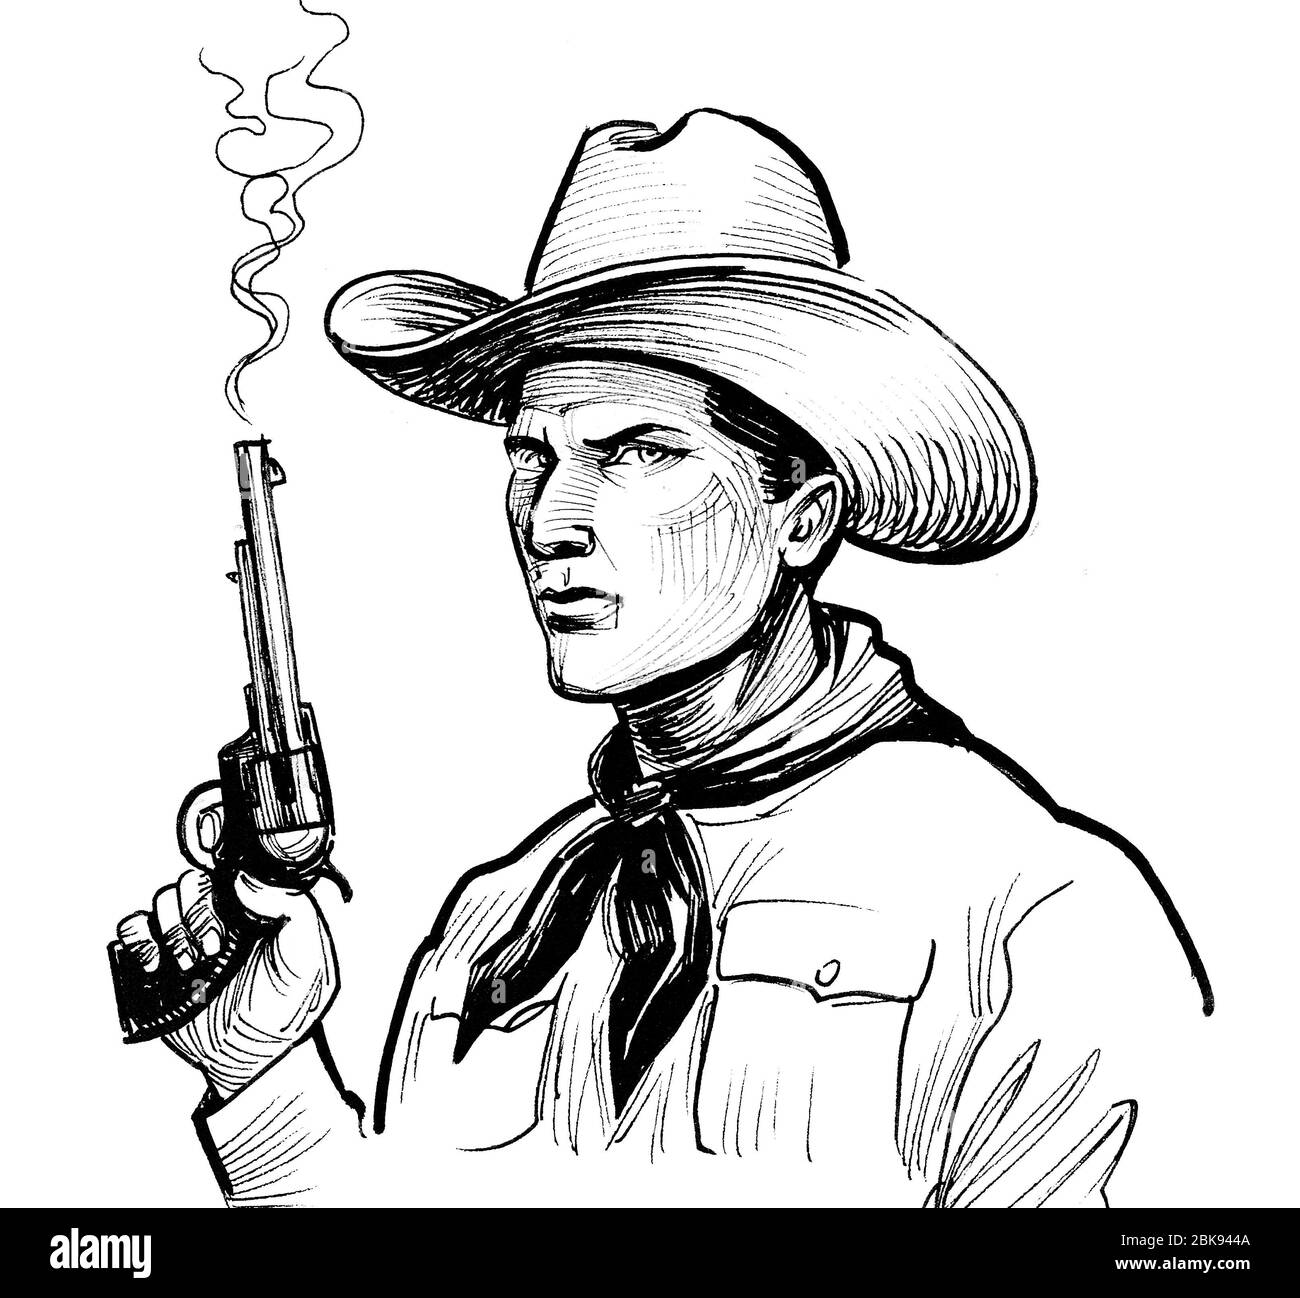 Cowboy-Charakter mit einem rauchenden Revolver Pistole. Tinte schwarz-weiß Zeichnung Stockfoto